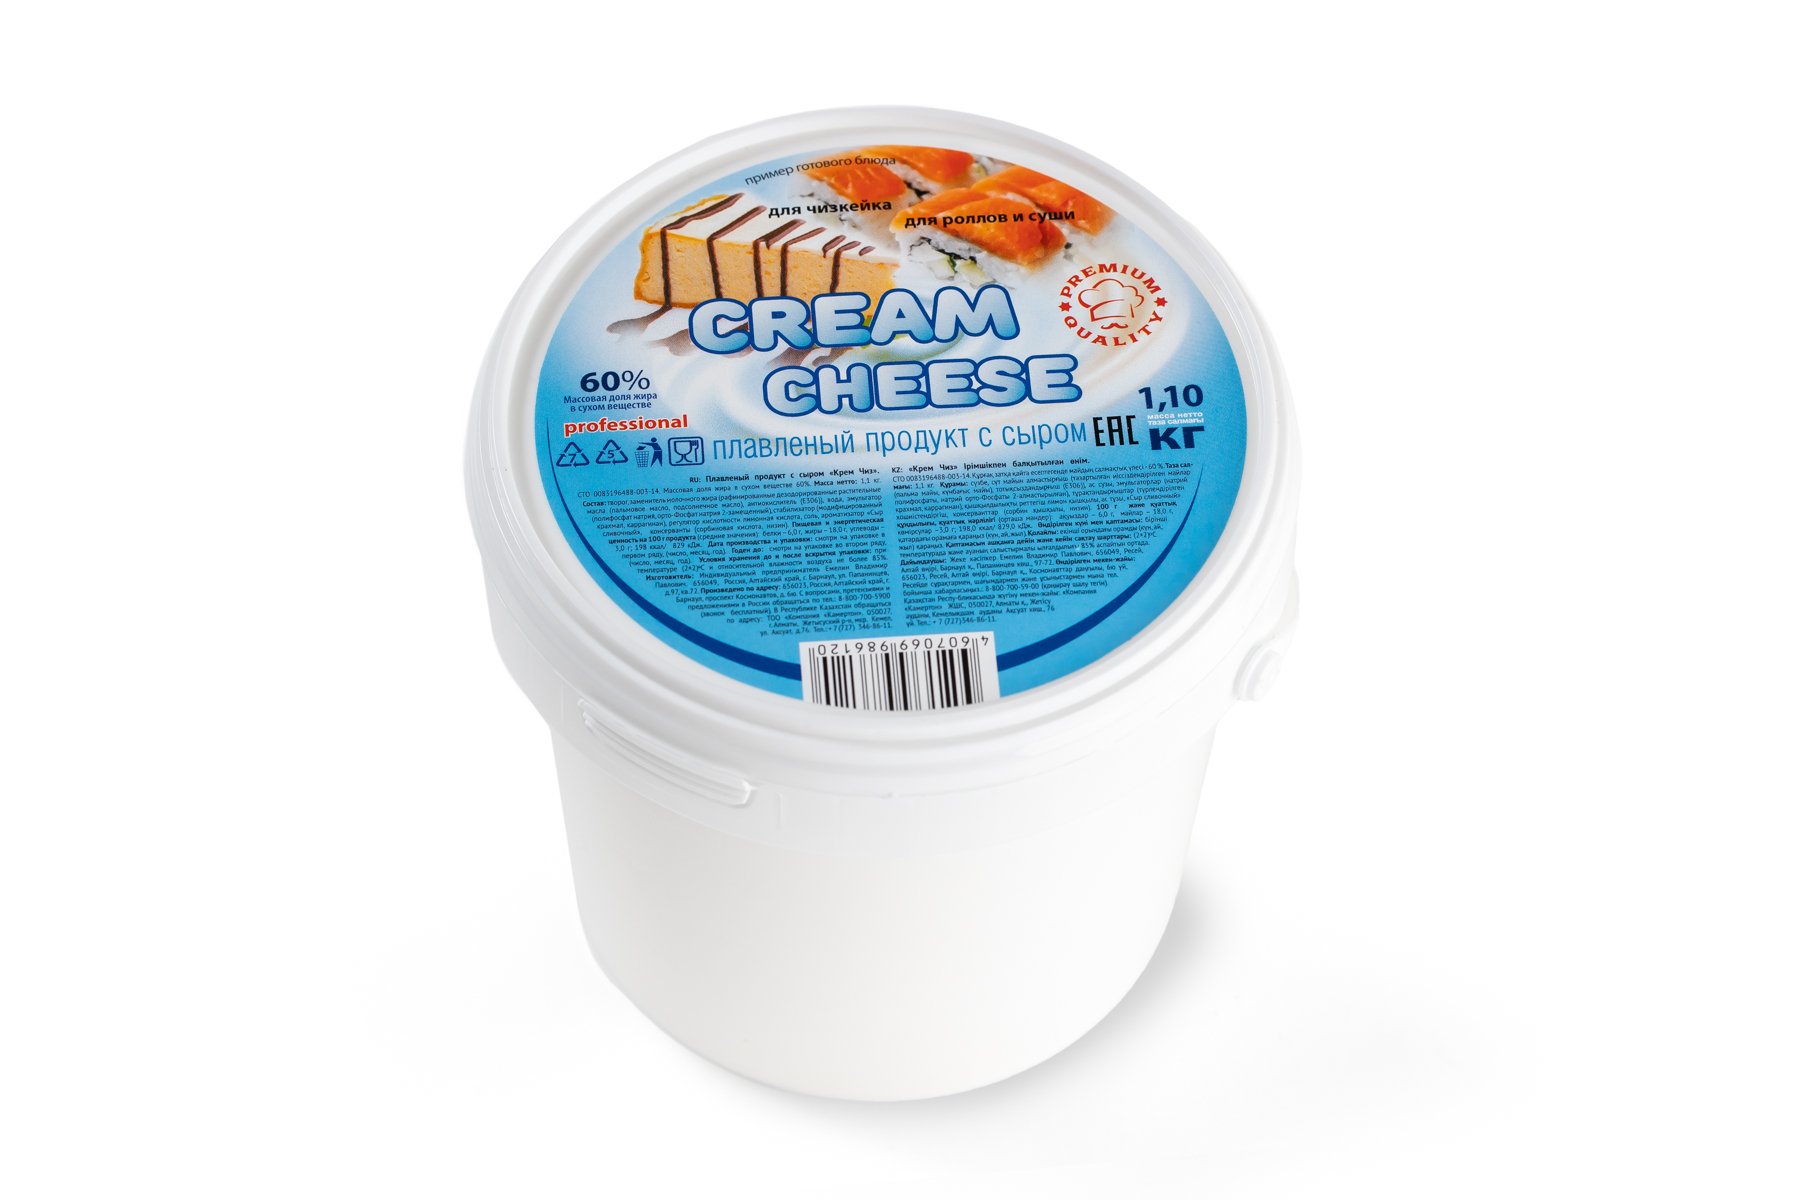   ТС Плавленный продукт с сыром 60%  Crem Chees 1,1 кг./6 шт.